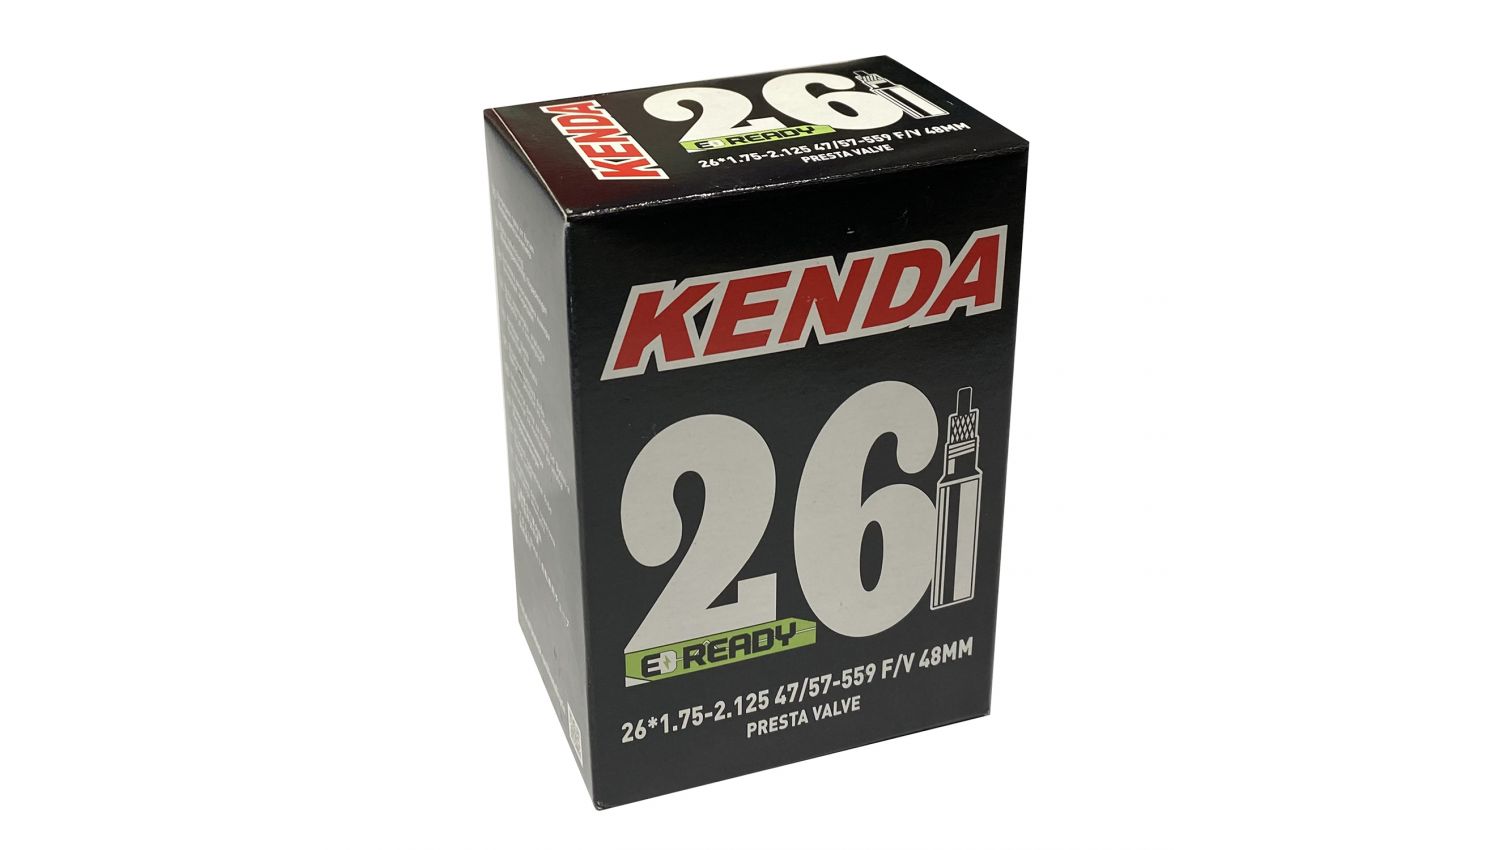 Фотография Камера KENDA 26x1.75-2.125, F/V-48 мм, 47/57-559, в коробке